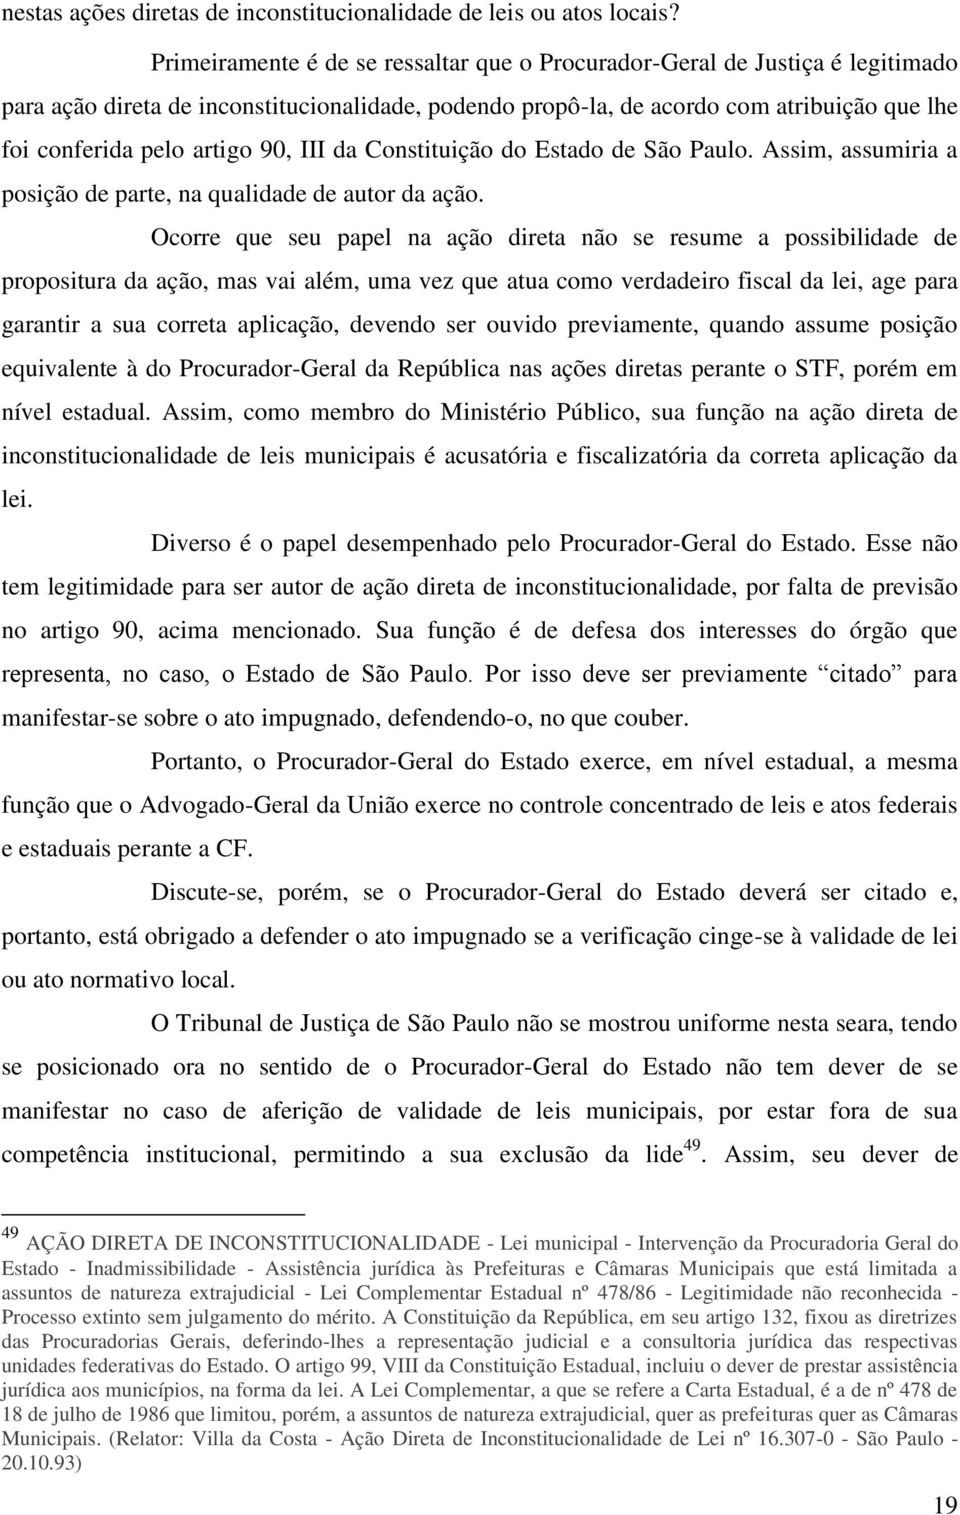 90, III da Constituição do Estado de São Paulo. Assim, assumiria a posição de parte, na qualidade de autor da ação.